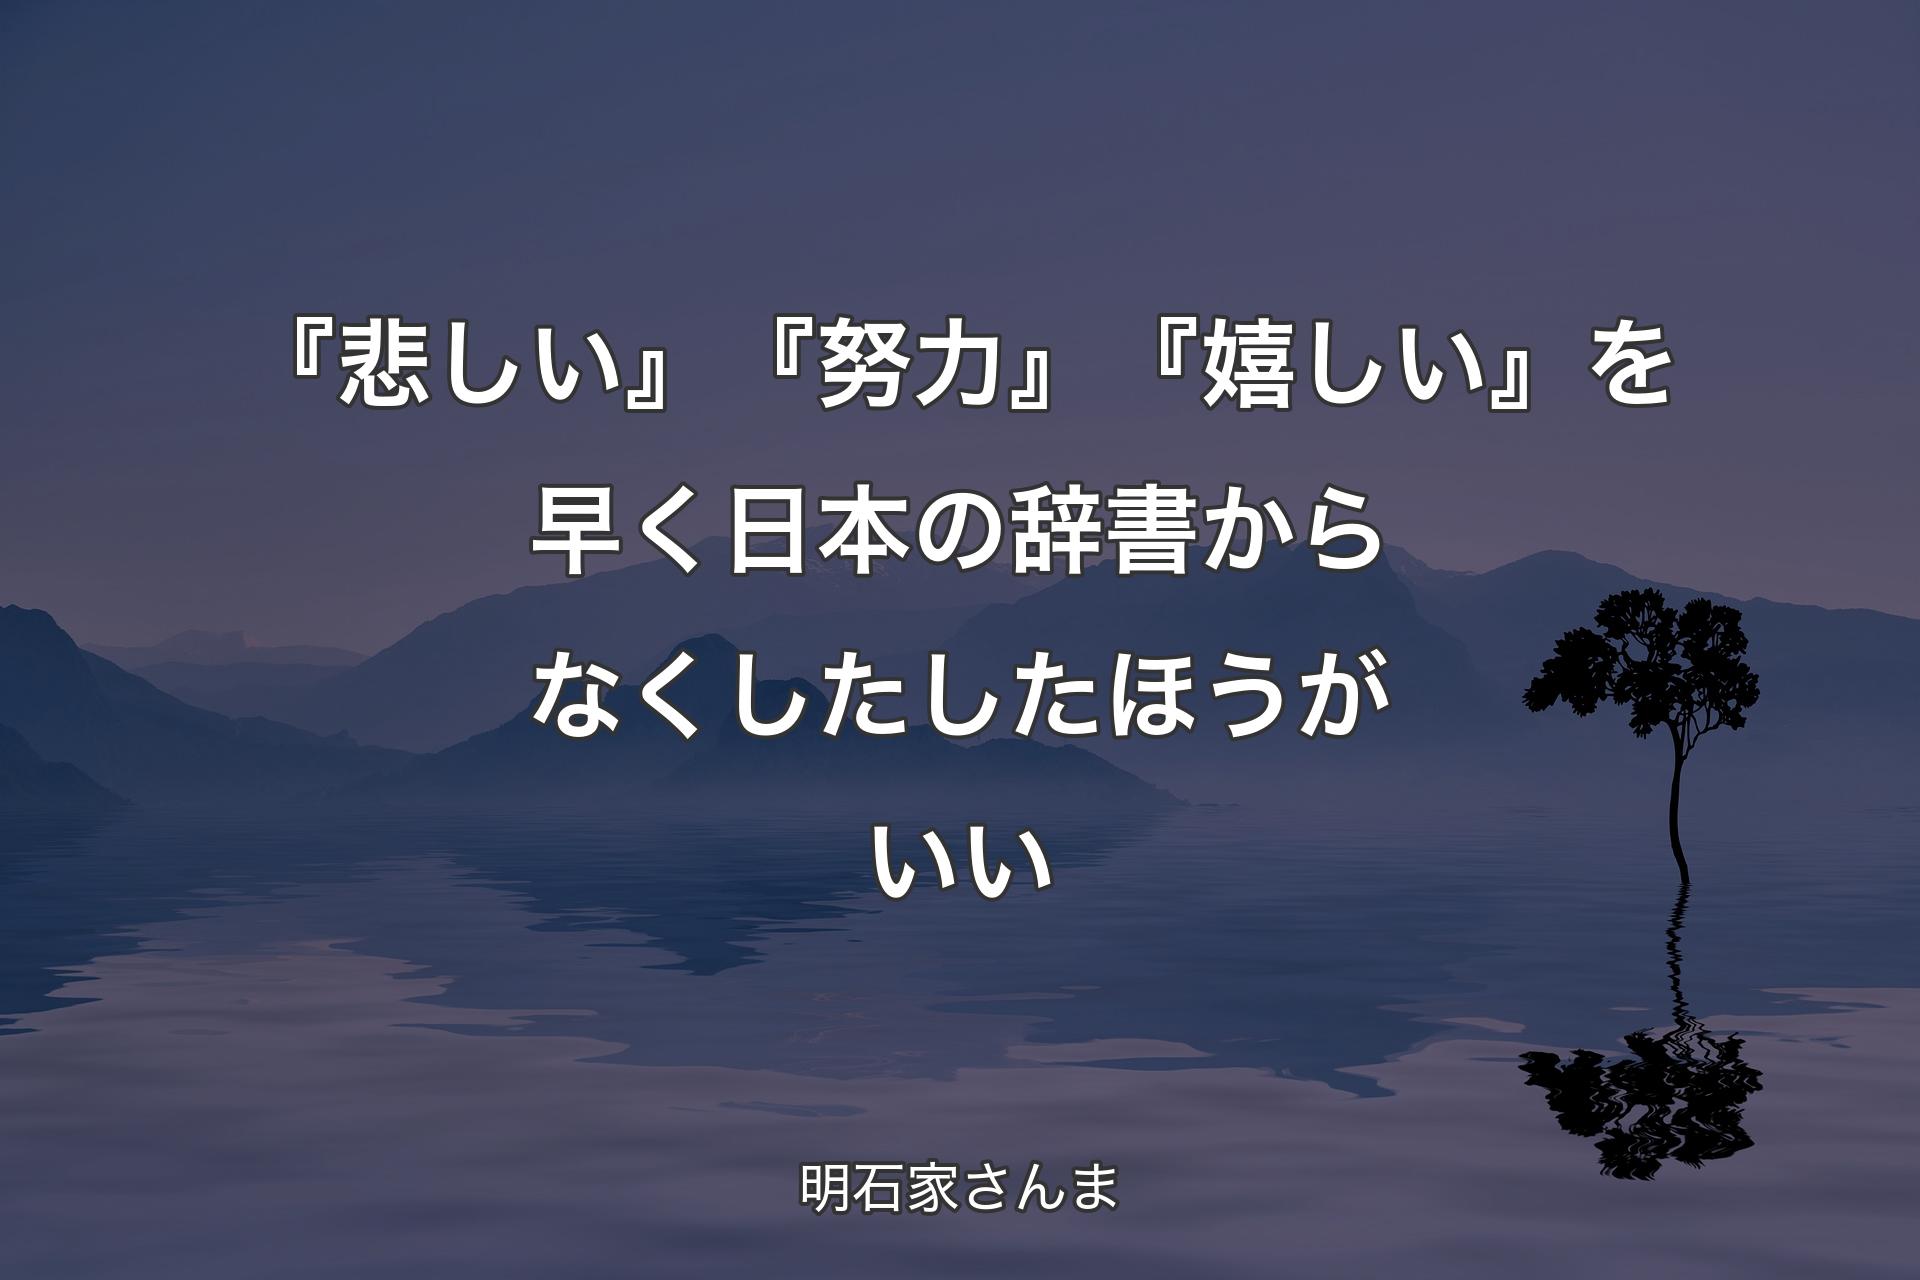 【背景4】『悲しい』『努力』『嬉しい』を早く日本の辞書からなくしたしたほうがいい - 明石家さんま